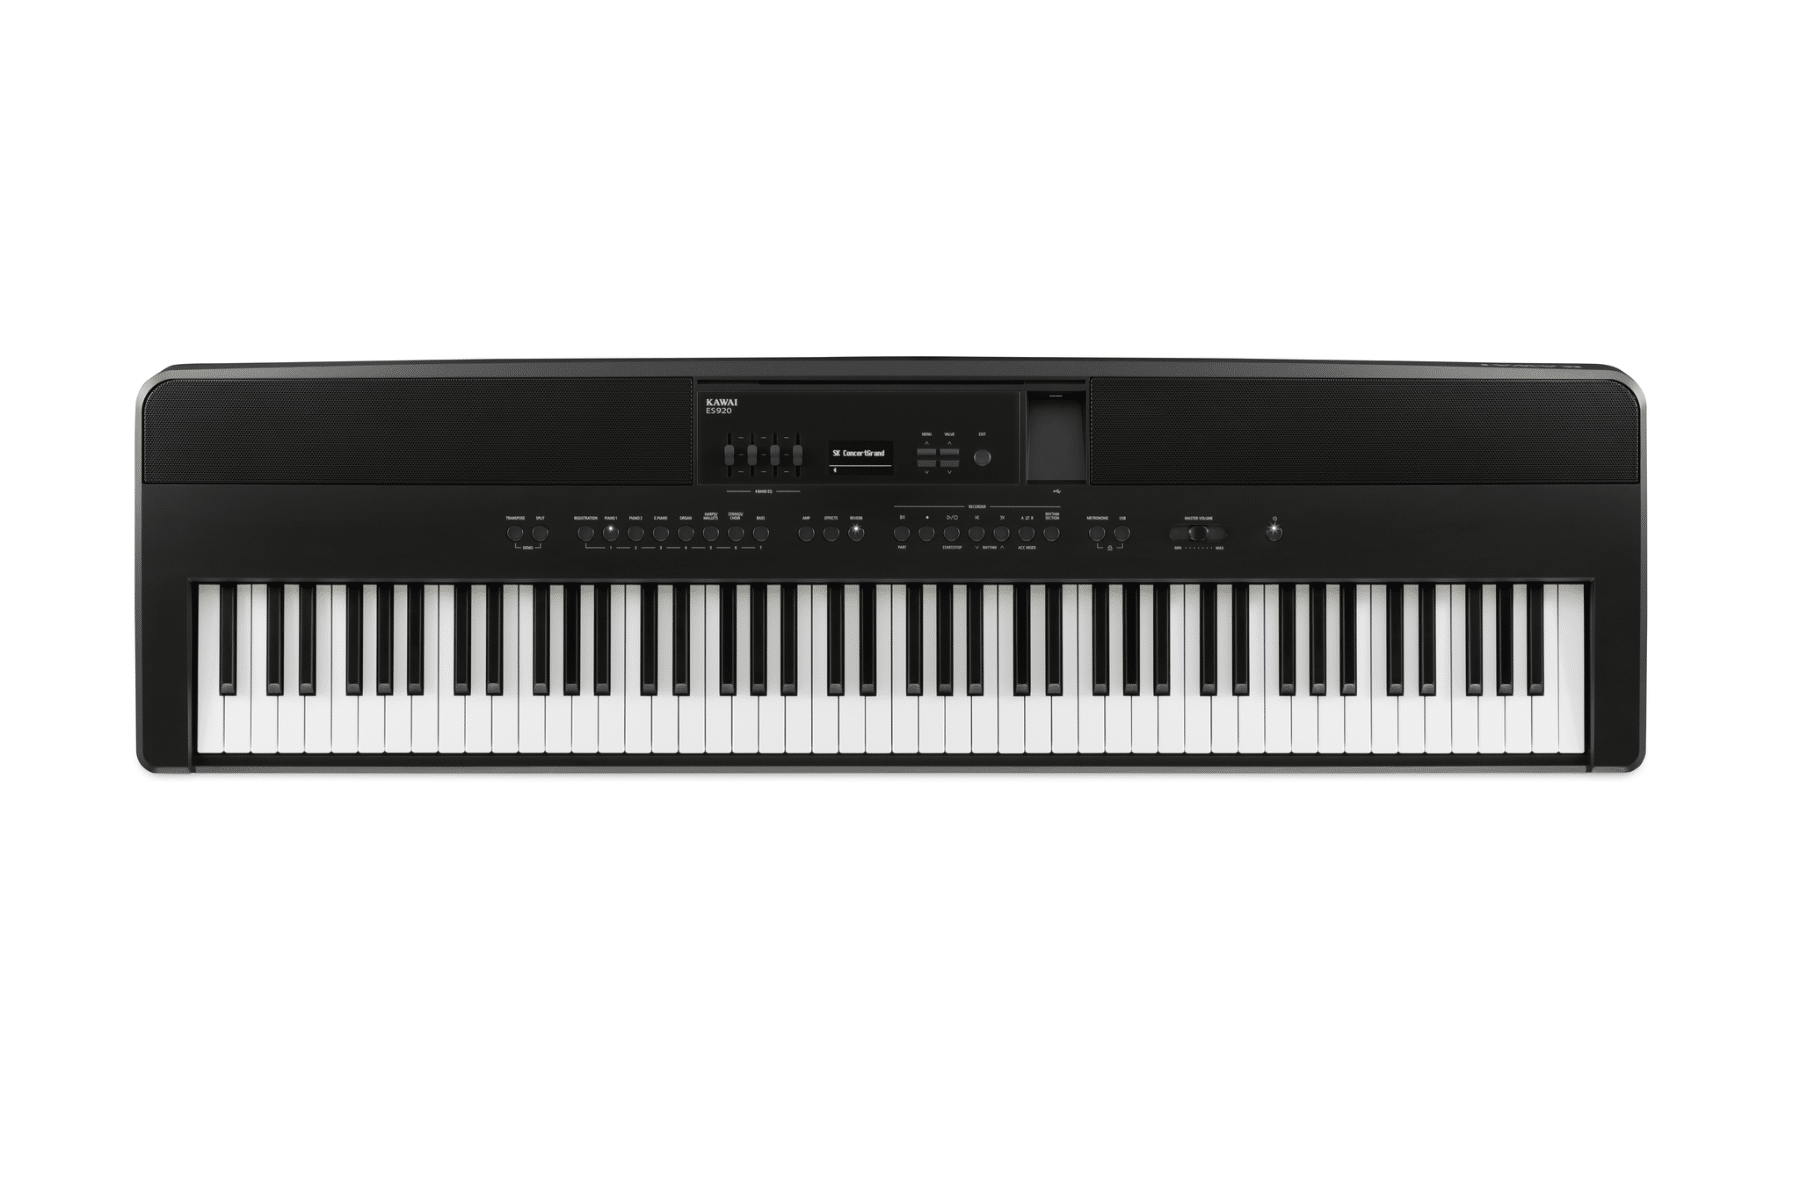 Comment bien choisir son piano numérique ou synthétiseur ?